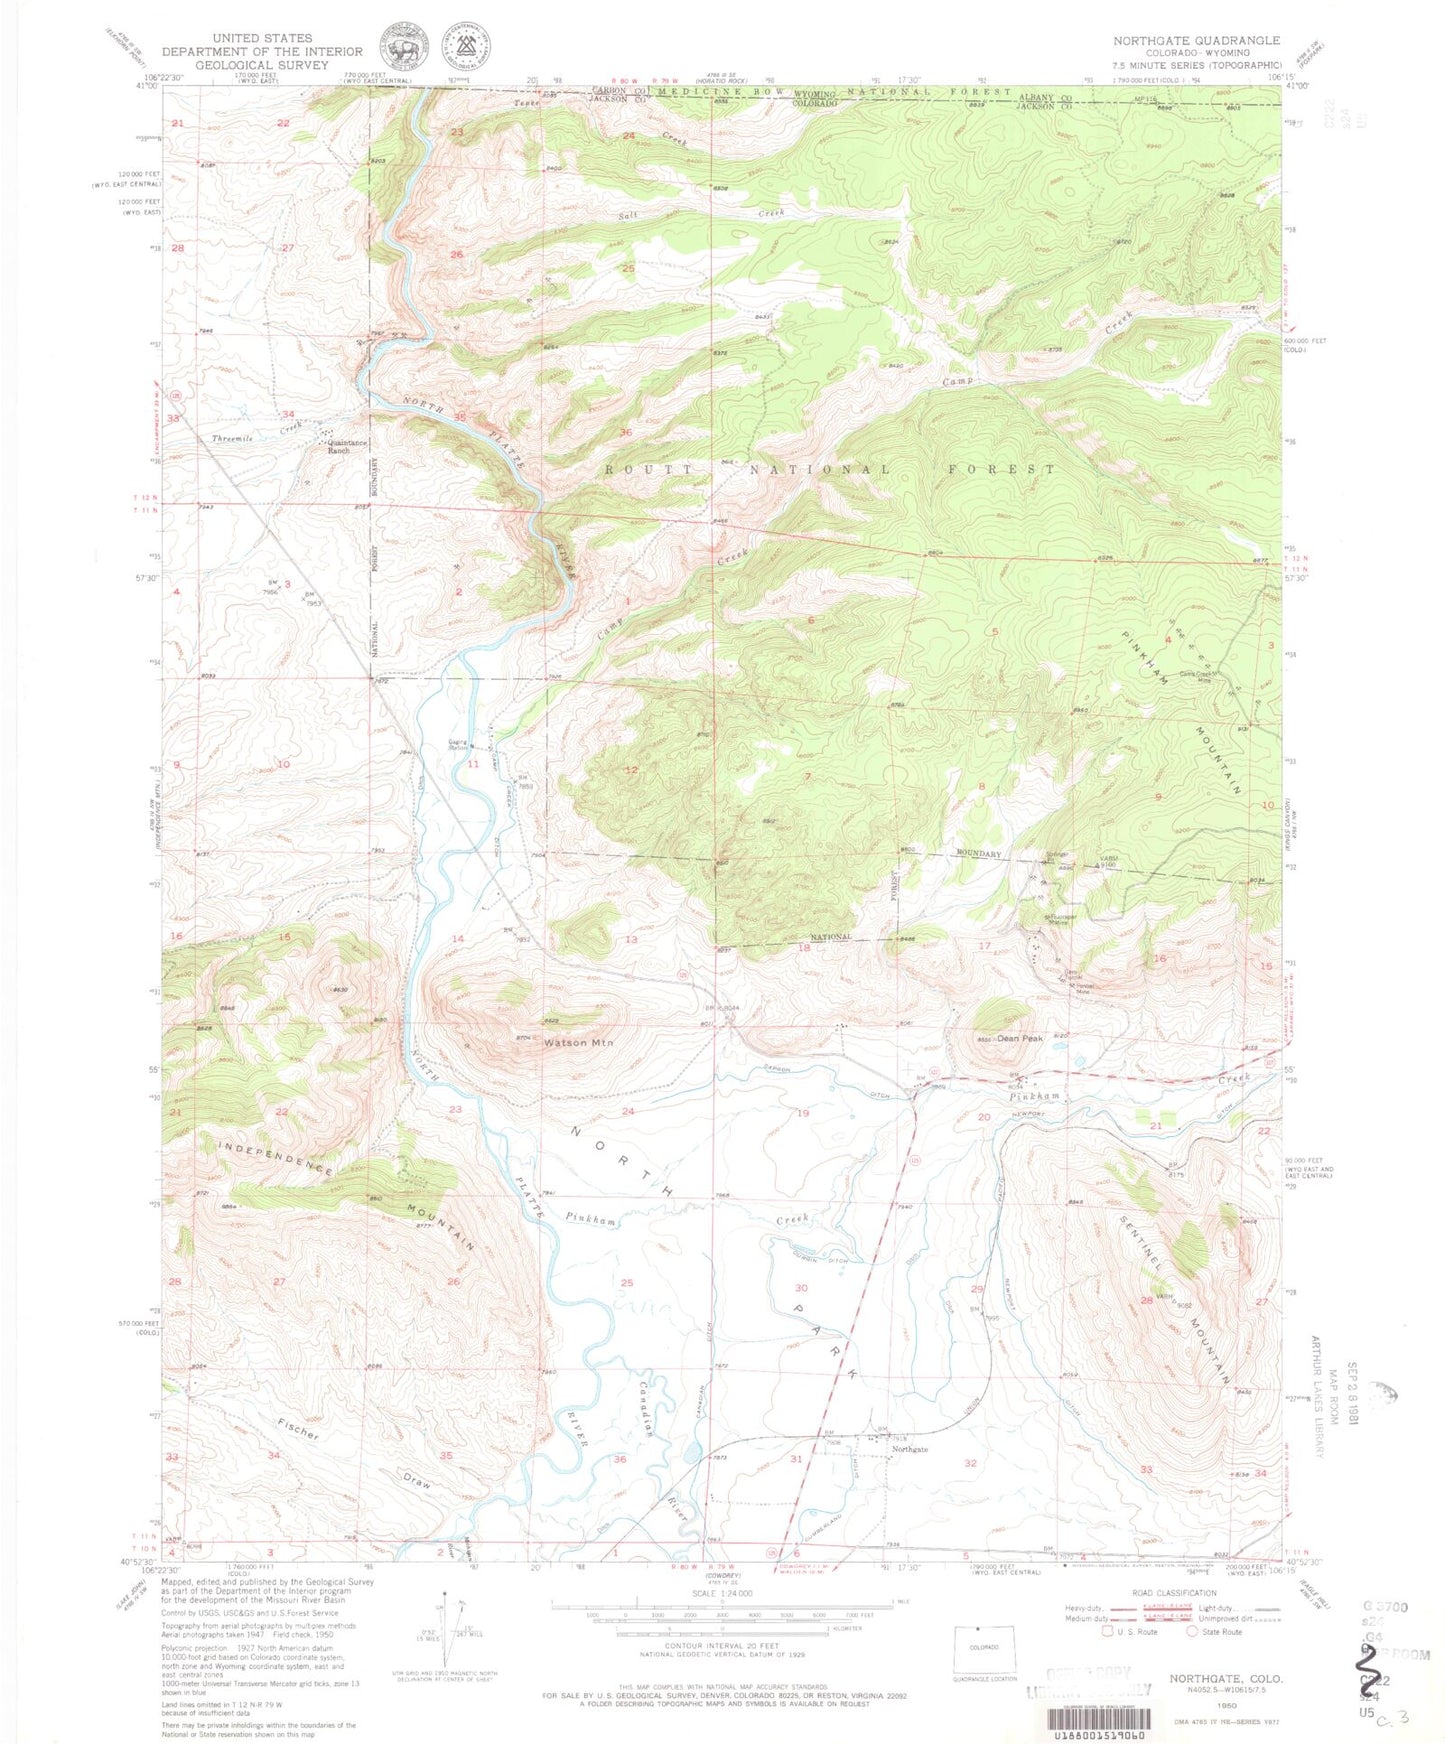 Classic USGS Northgate Colorado 7.5'x7.5' Topo Map Image